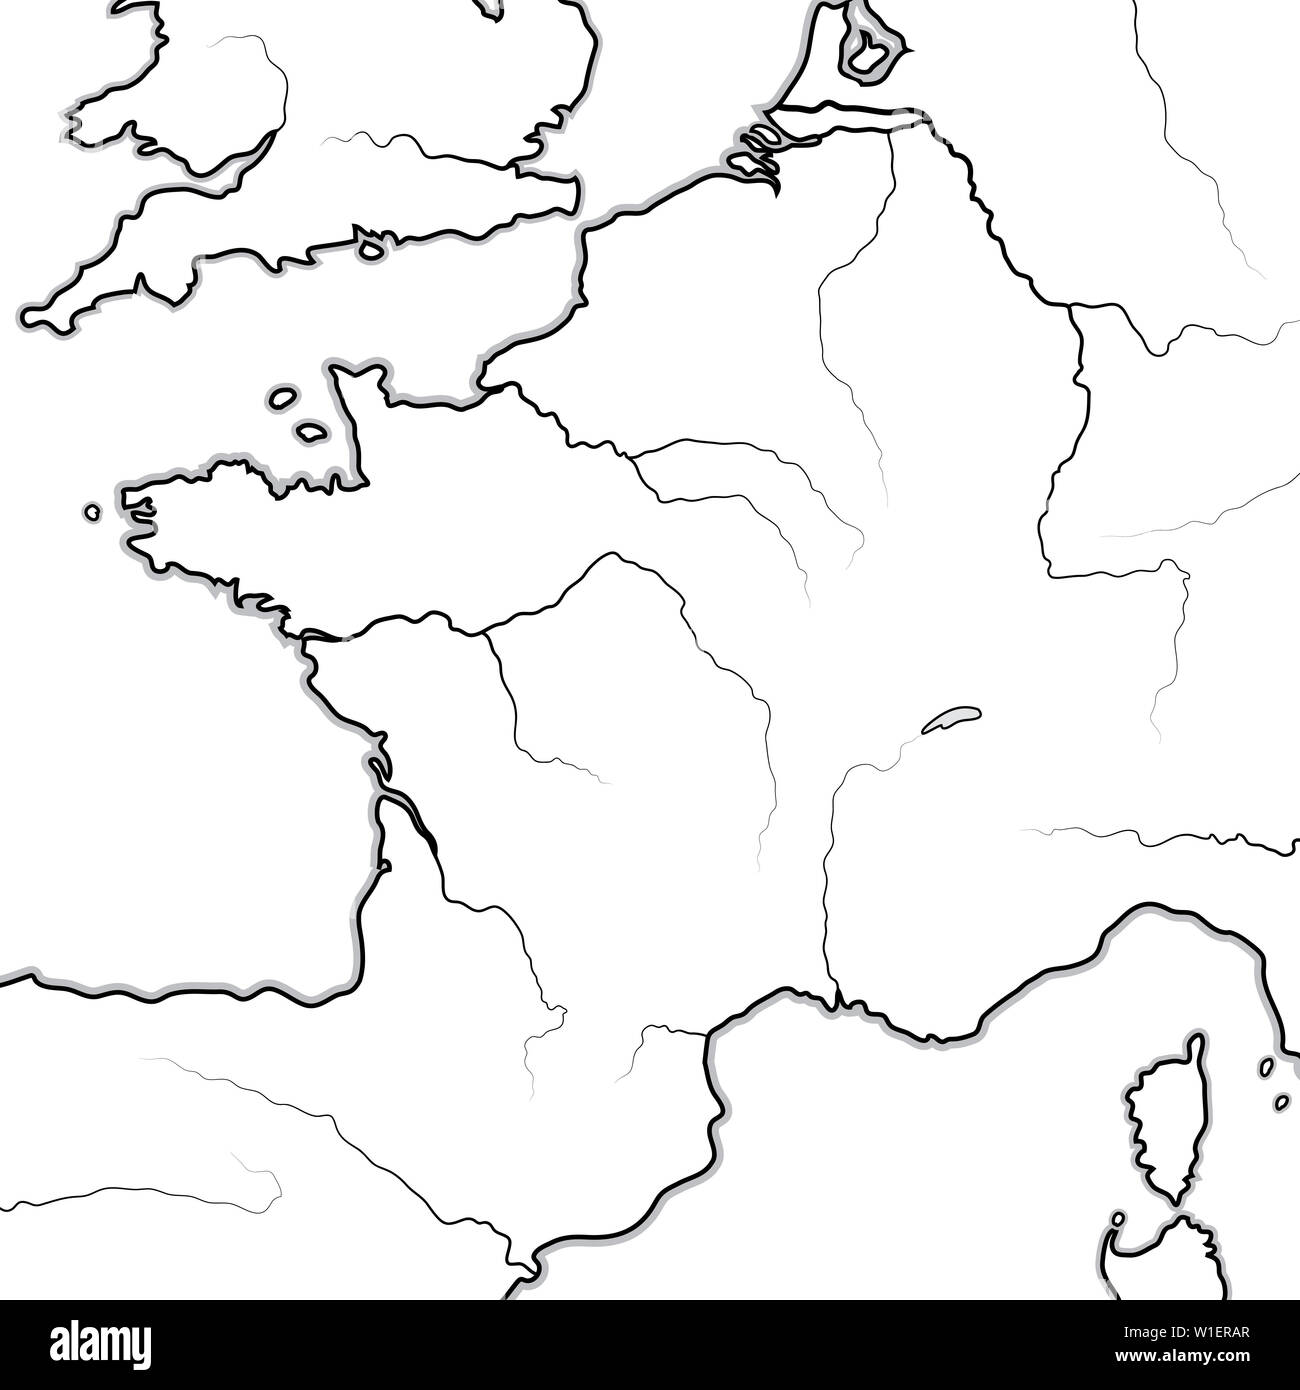 Mappa delle terre francesi: la Francia e le sue regioni (Île-de-France, Champagne, Normandie, Bretagne, Aquitaine, Occitanie, Provenza, Borgogna, Lorraine). Foto Stock